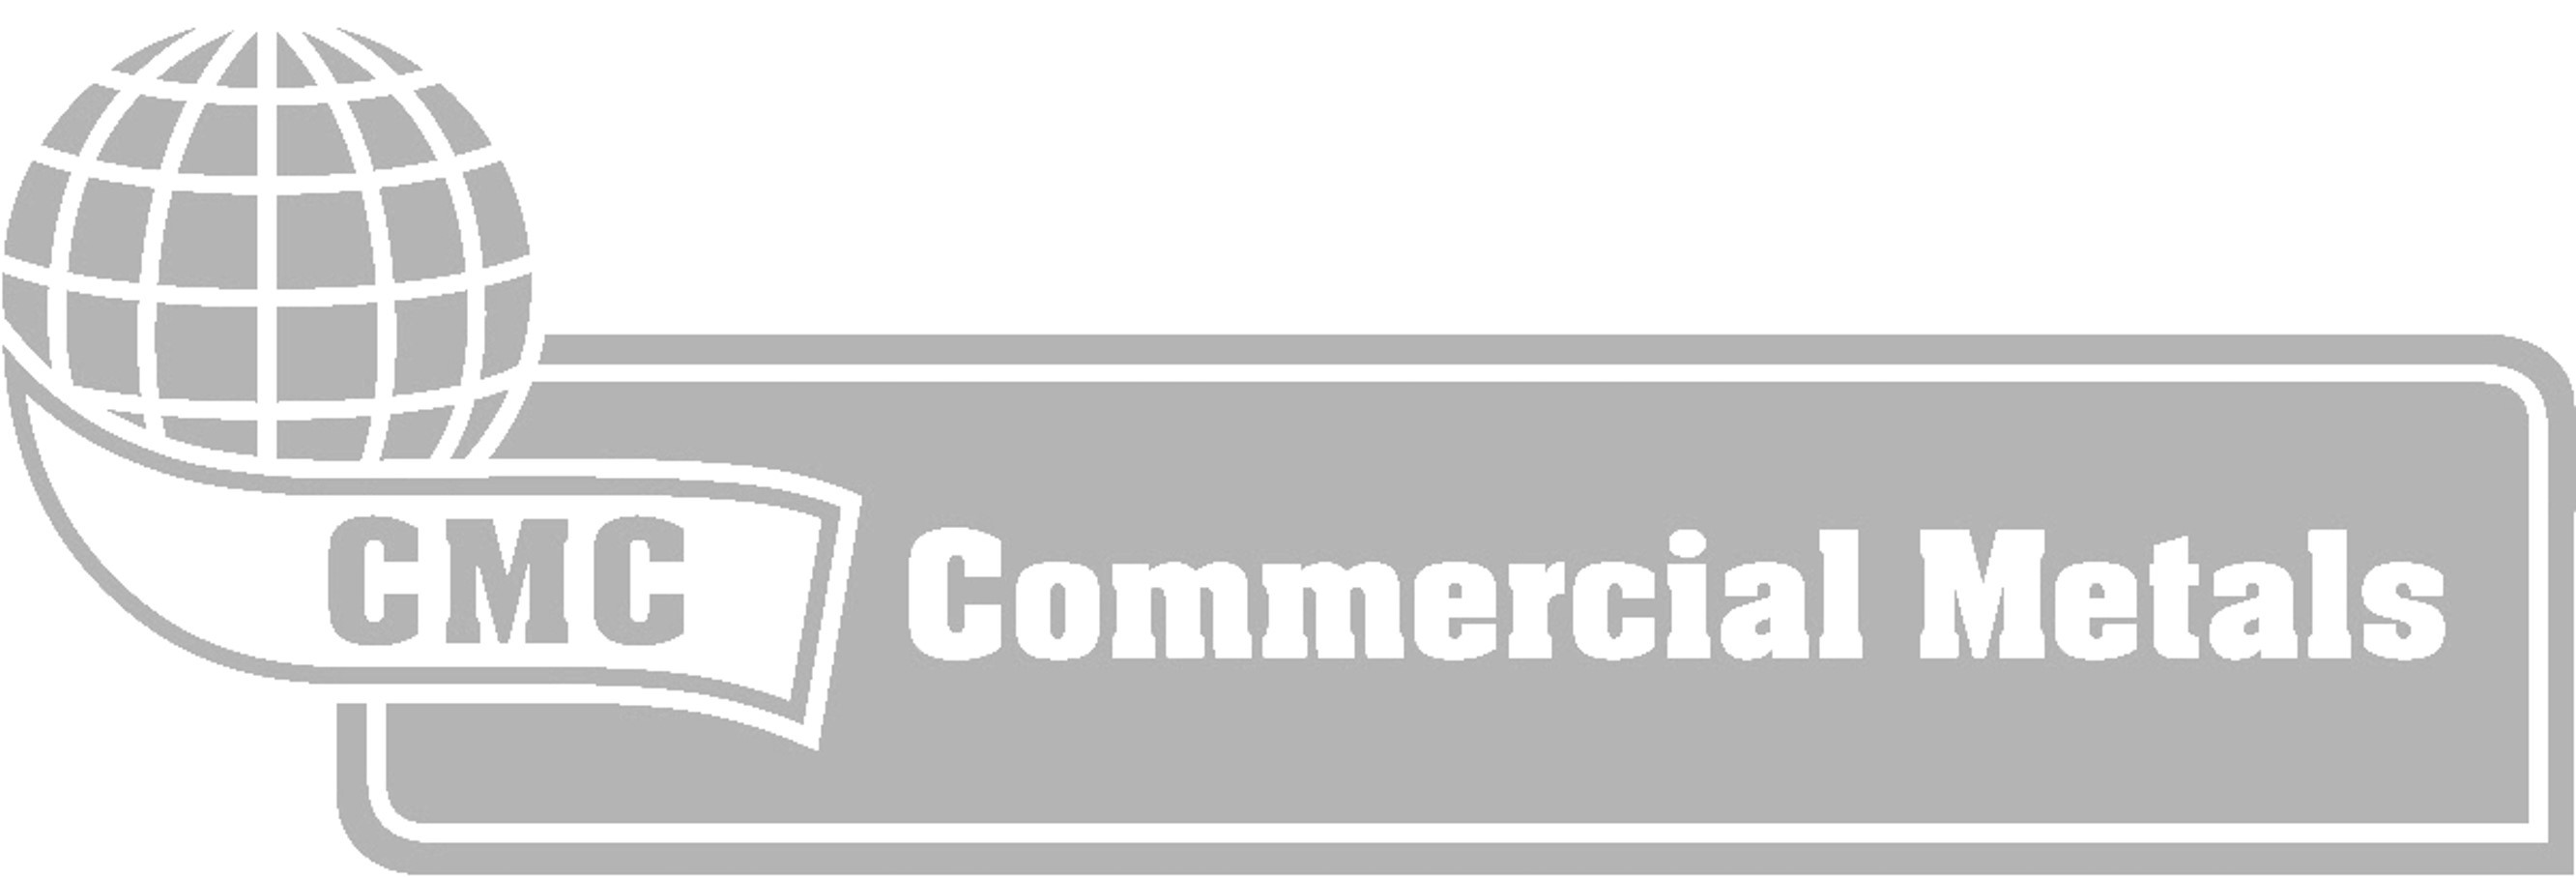 Commercial Metals Company